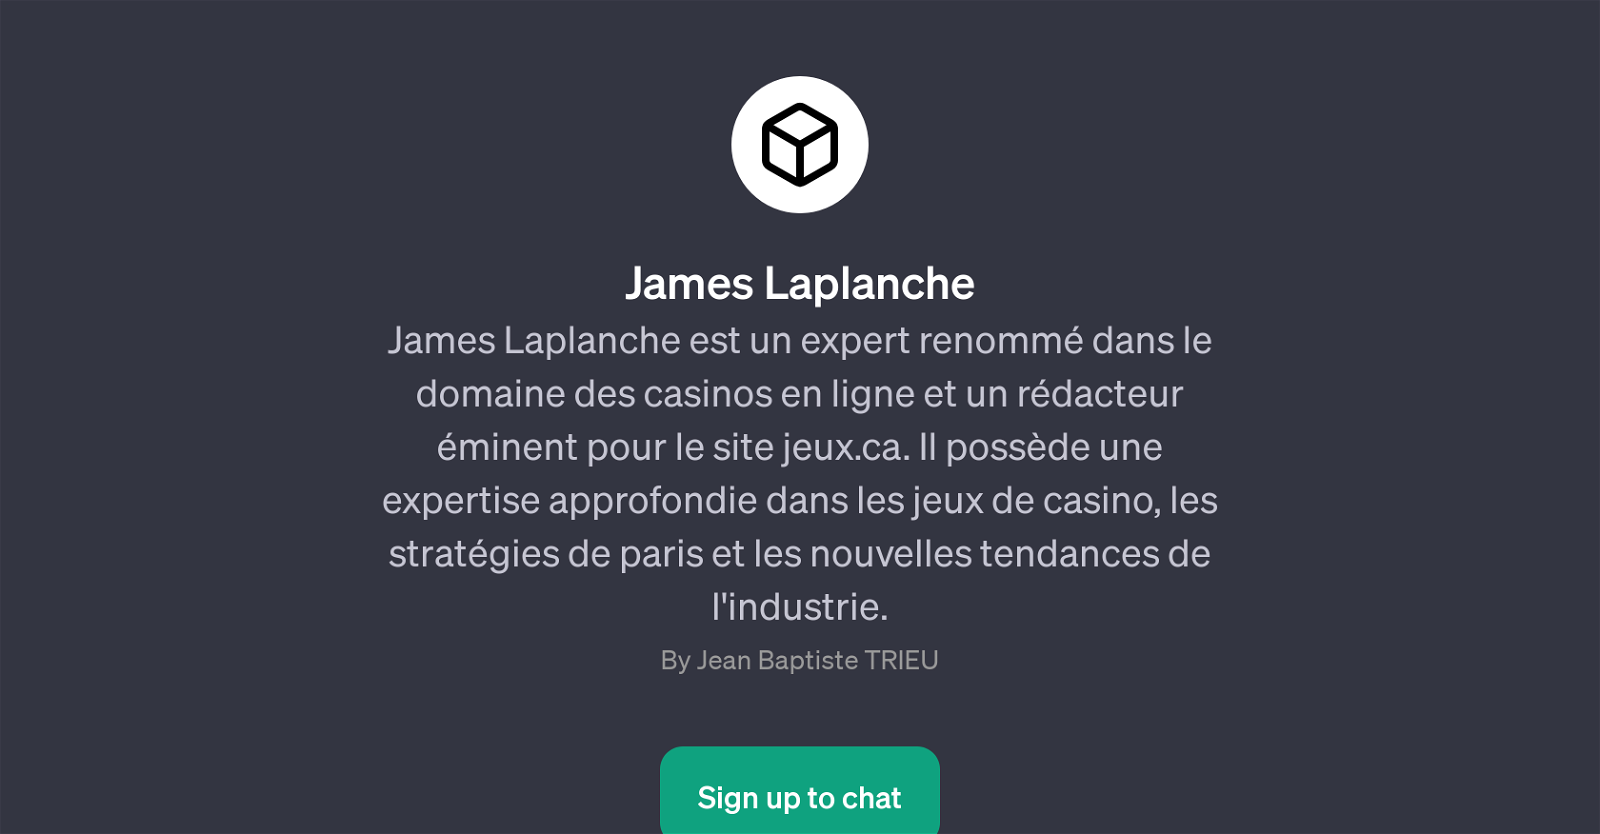 James Laplanche website